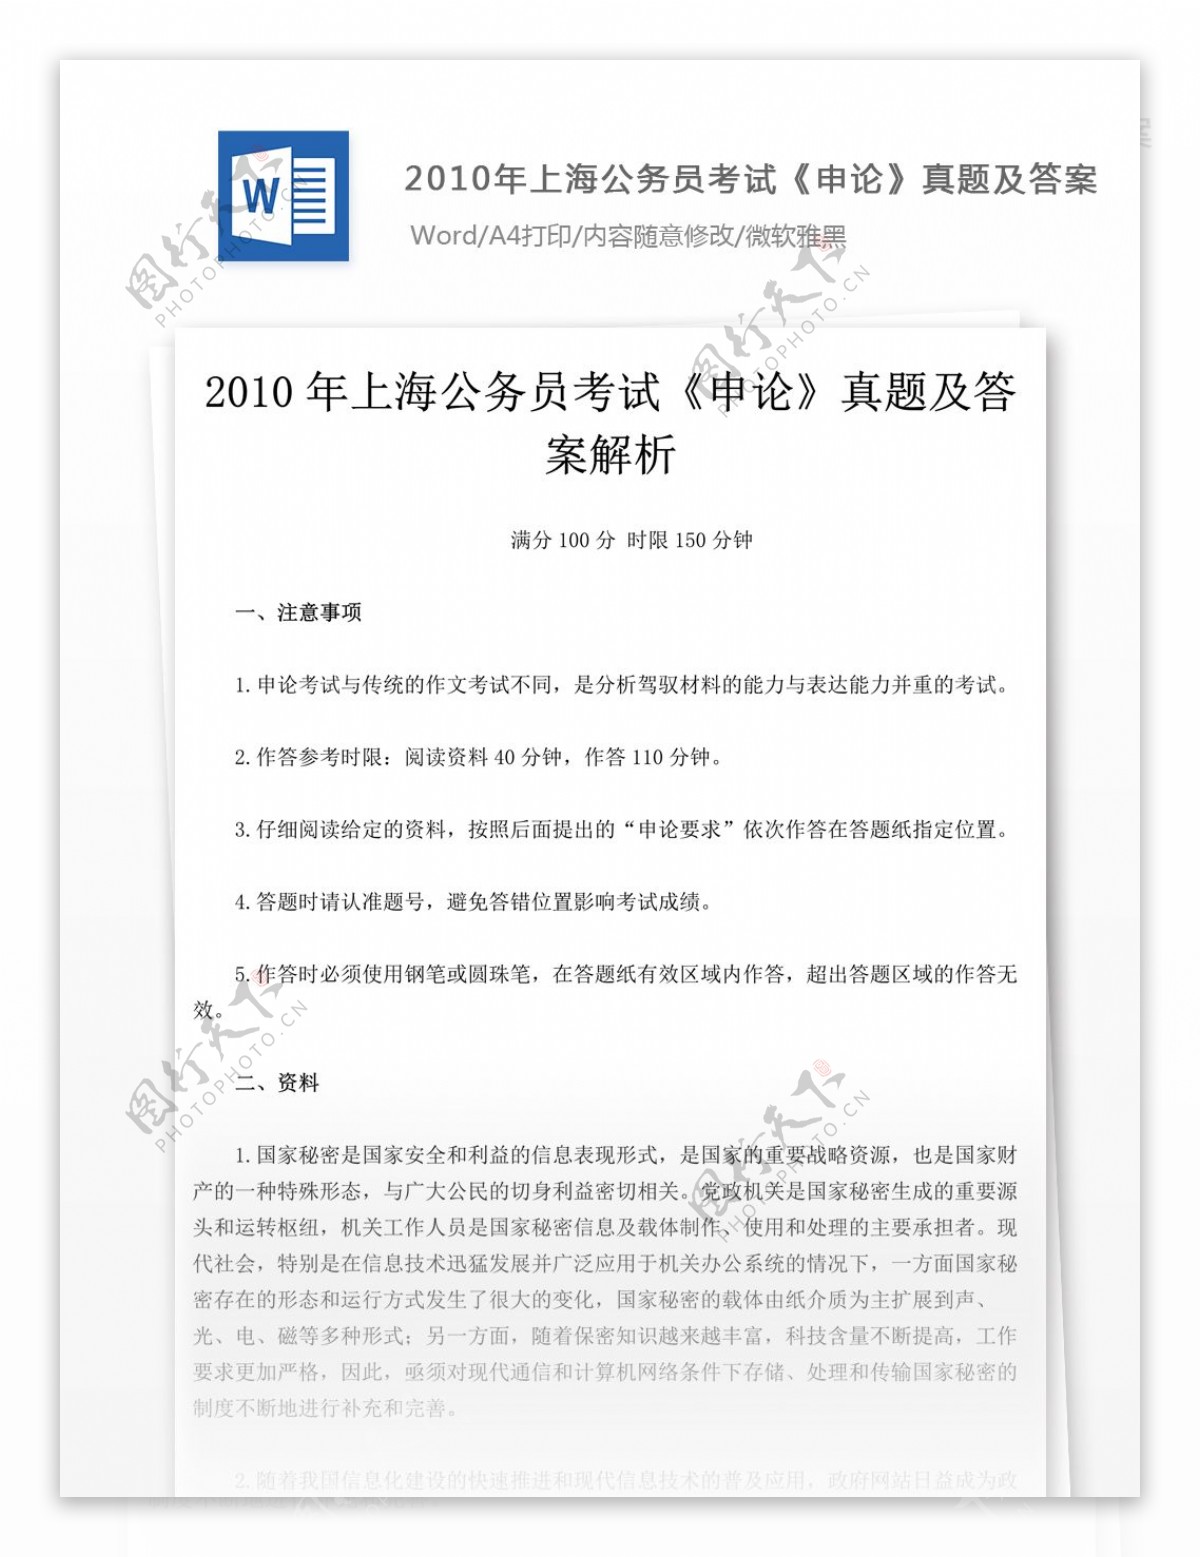 2010年上海公务员考试申论真题文库题库